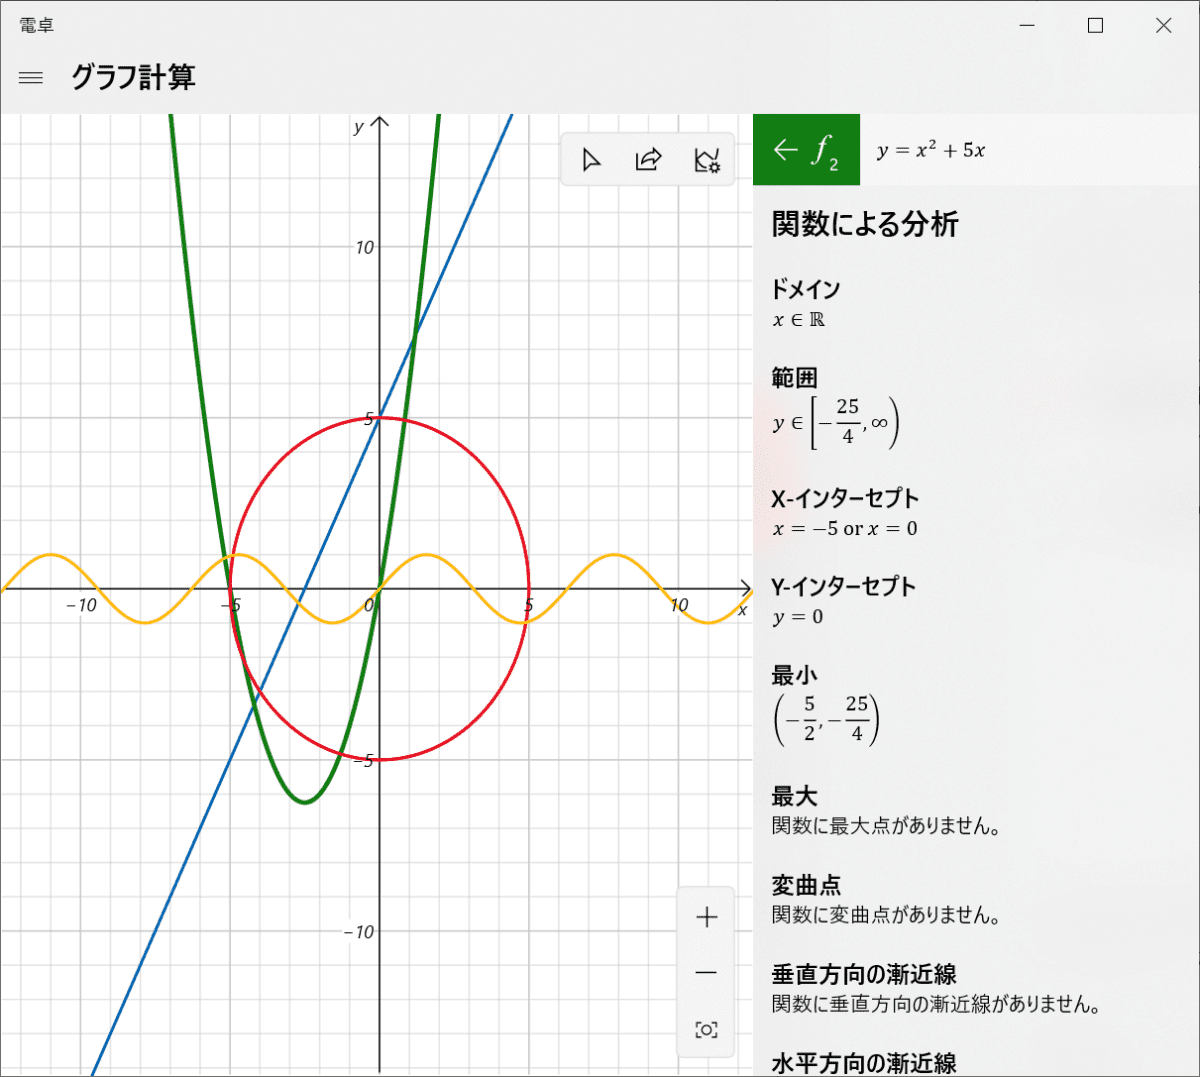 ドメイン　範囲　xインターセプト yインターセプト　最小　最大　変曲点　漸近線などが表示されている